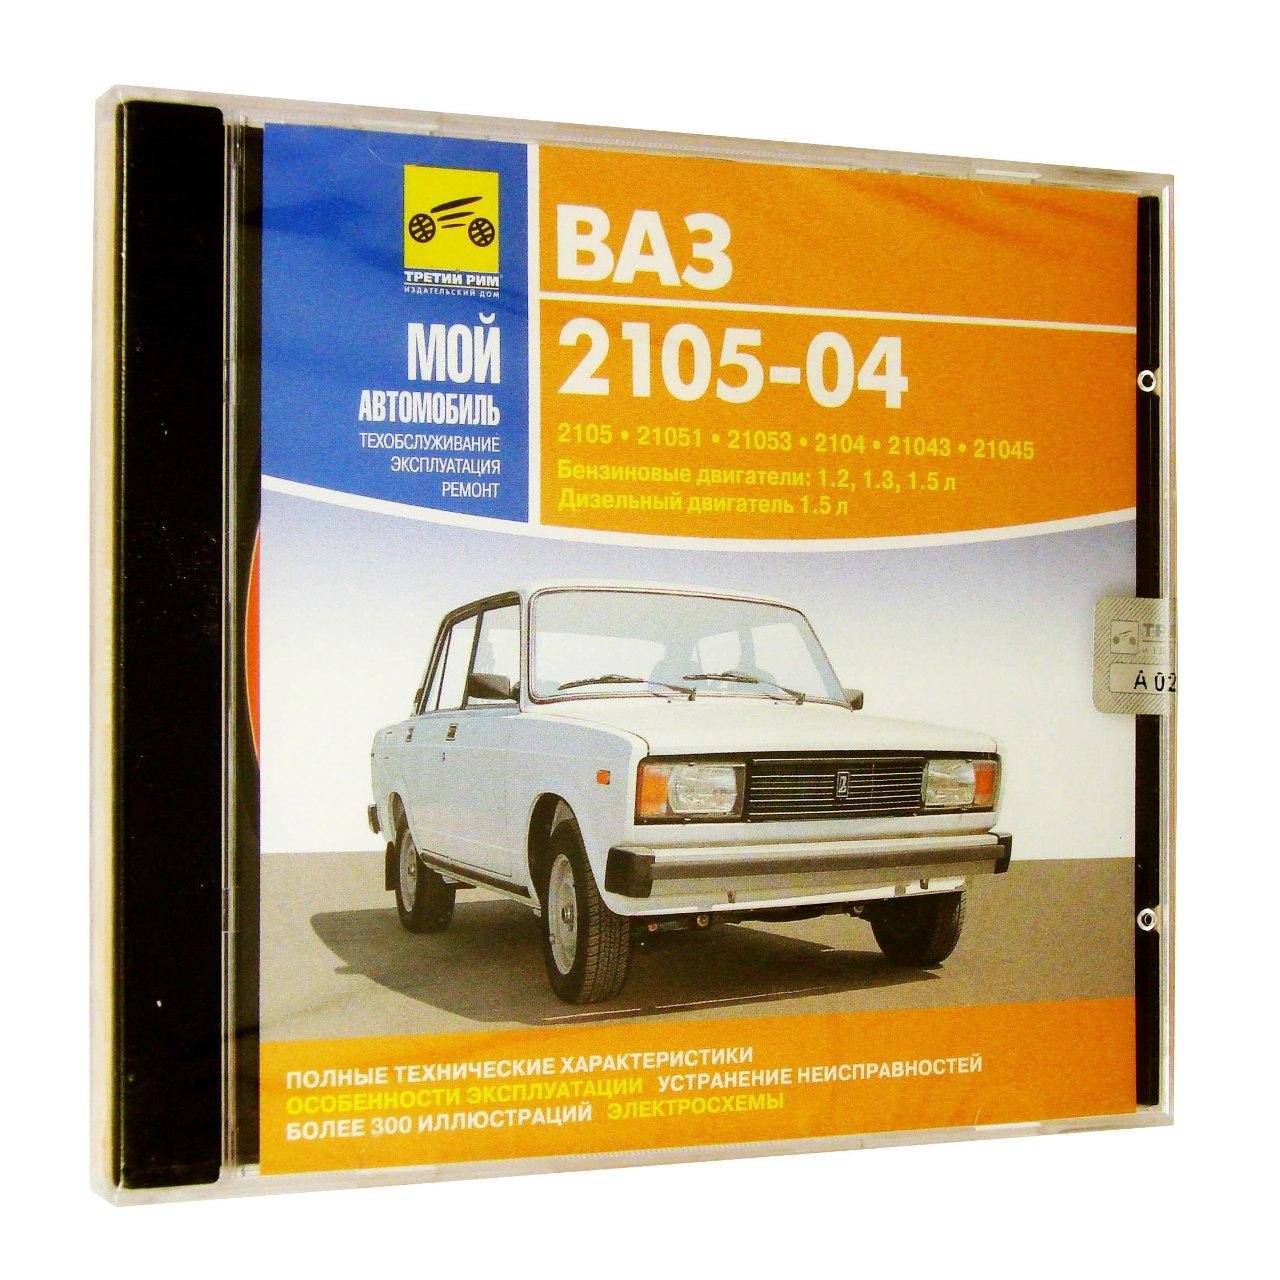 Компьютерный компакт-диск ВАЗ 2105-04. ’Мой автомобиль’. (ПК), фирма "Медиа Ворлд" 1CD